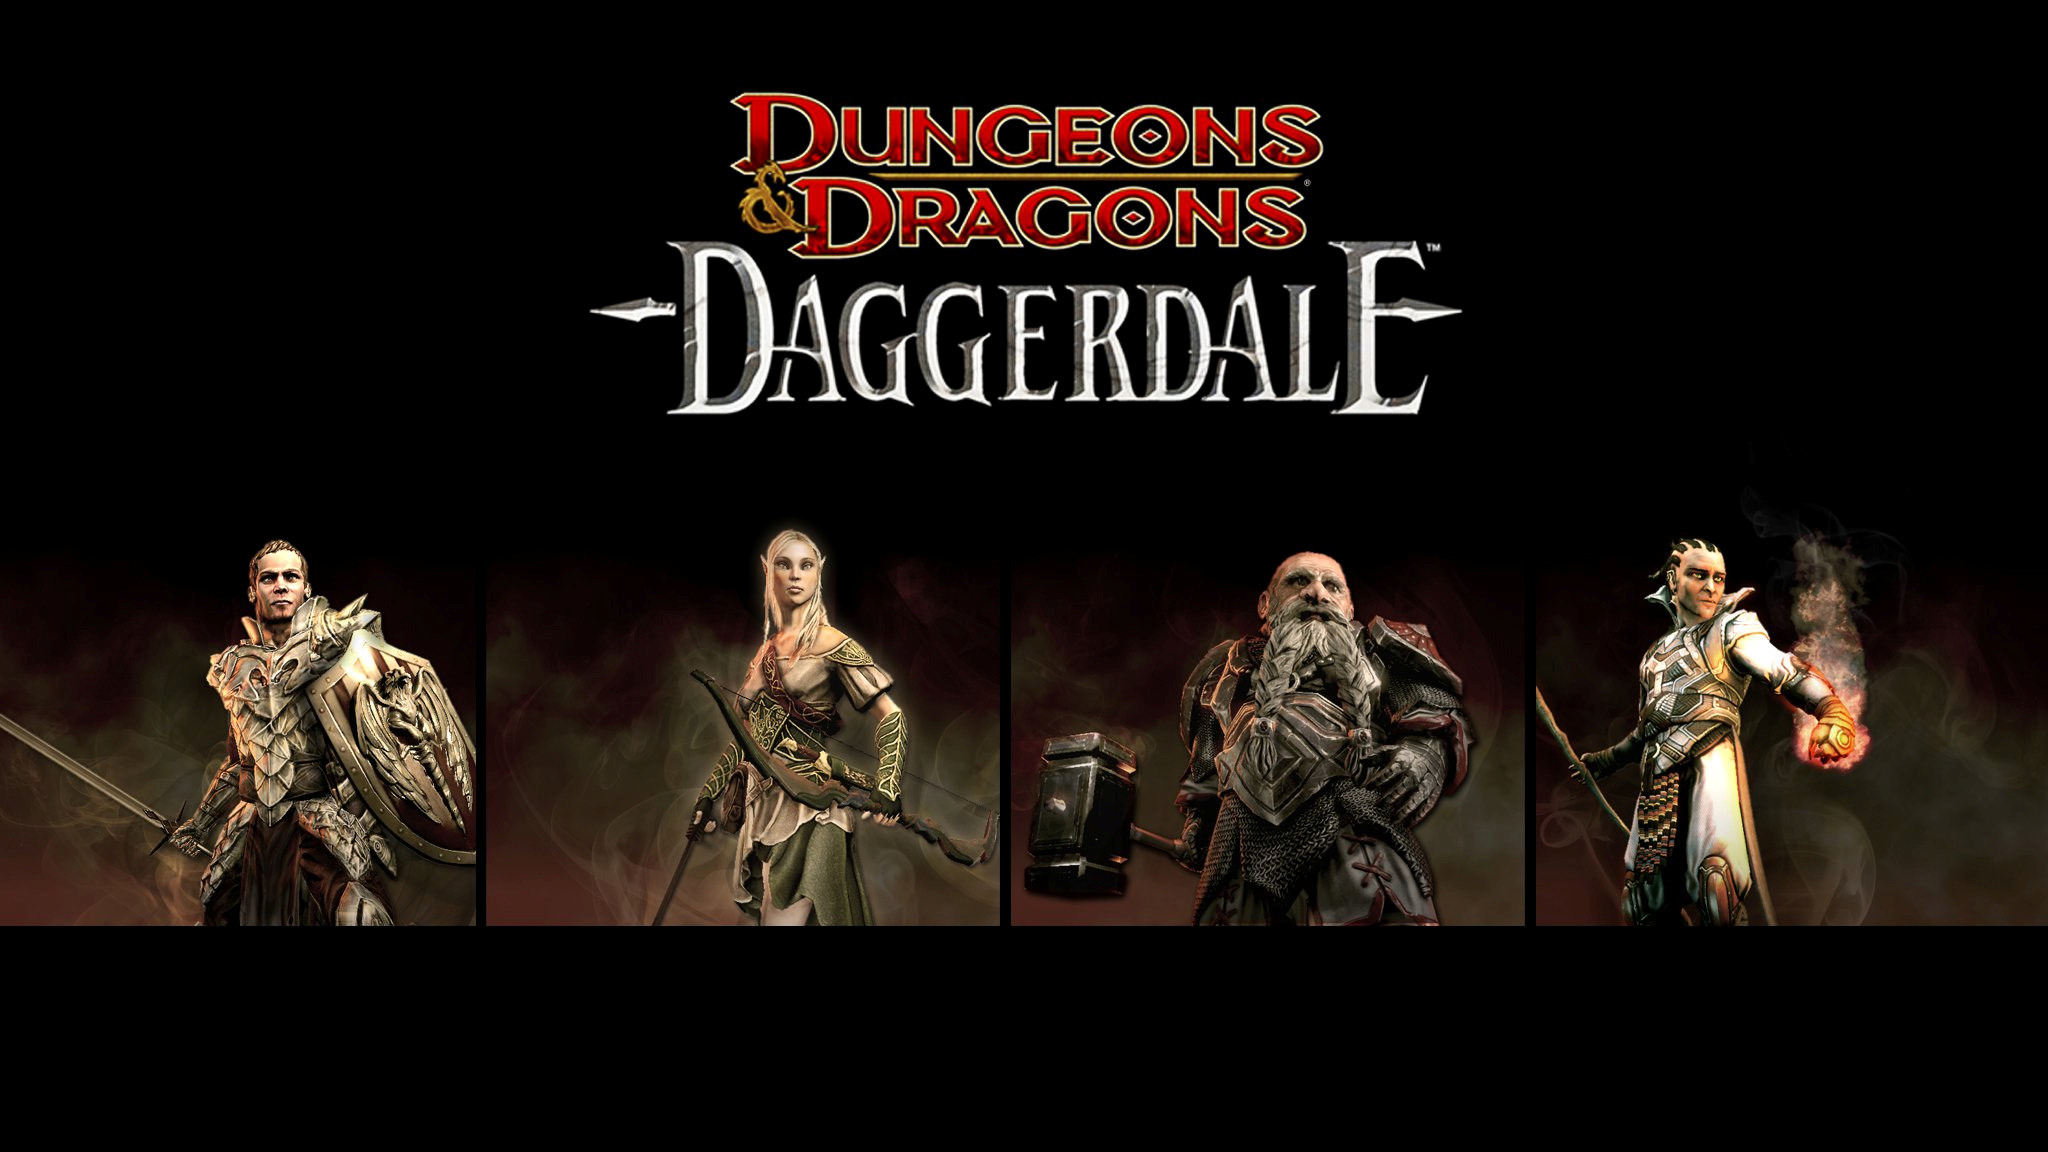 GameBanshee - Games - Dungeons & Dragons: Daggerdale2048 x 1152